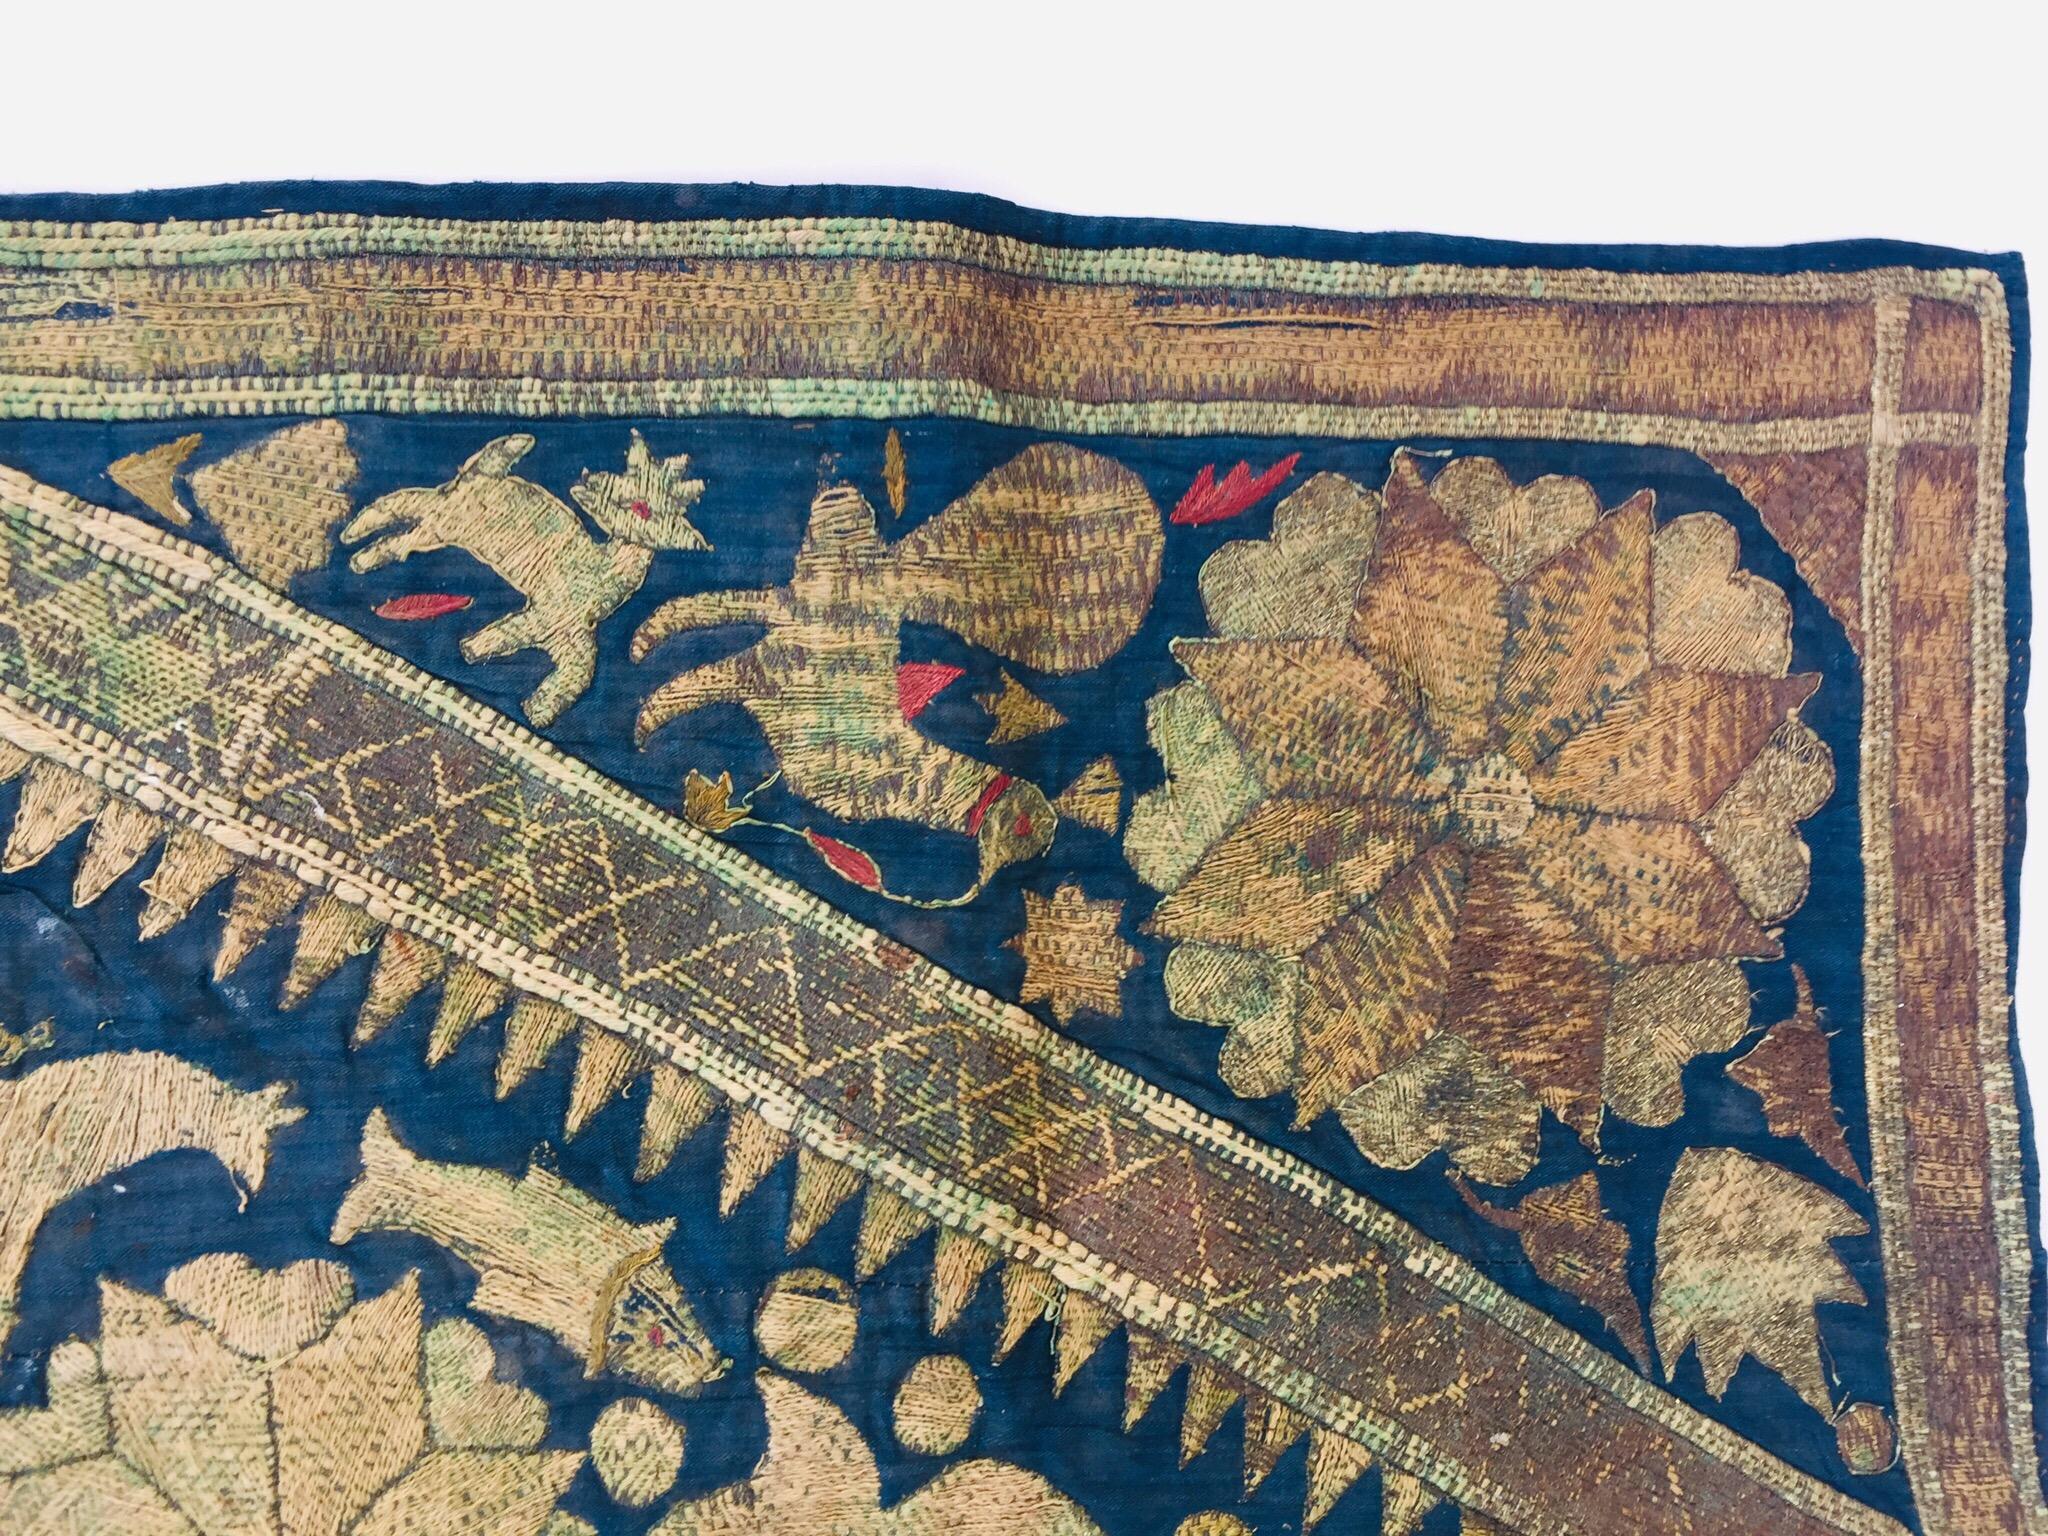 19th Century Moorish Islamic Ottoman Empire Textile Metallic Embroidered 2